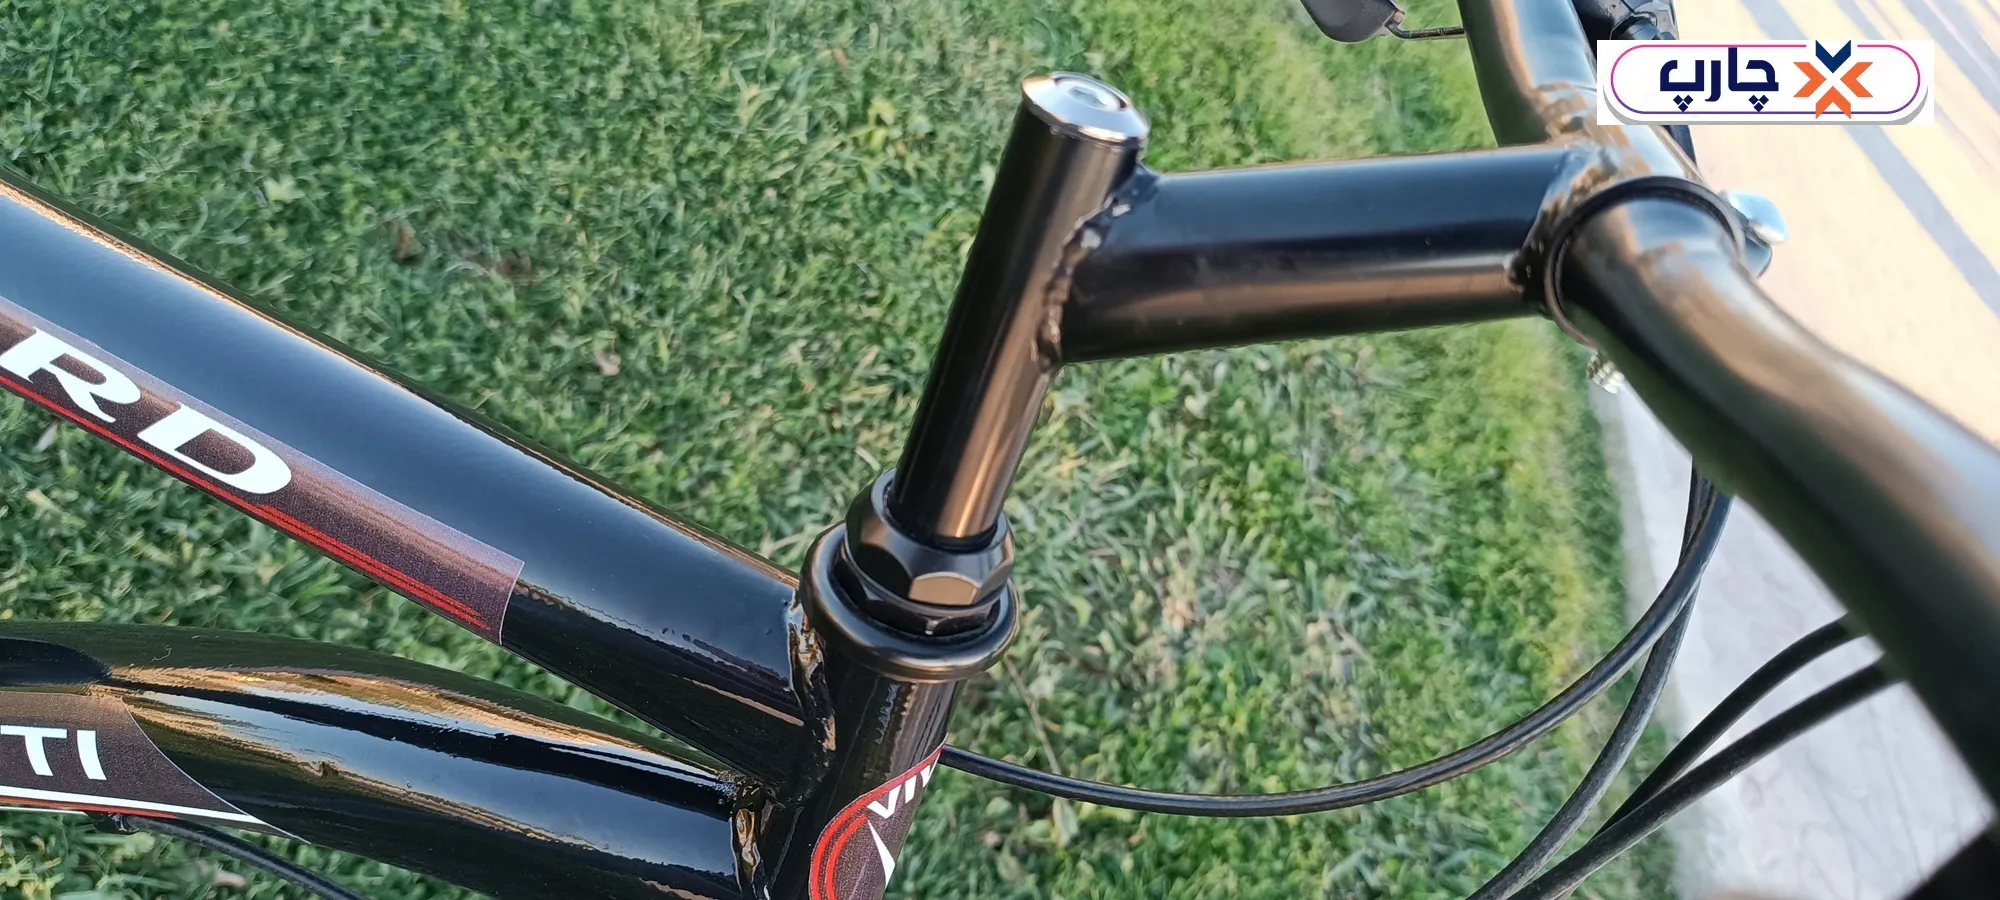 استفاده از دسته دنده 21 سرعته کلاج دار در کرپی کوهی دوچرخه سایز 26 دنده کلاجدار طرح المپیا رنگ مشکی قرمز